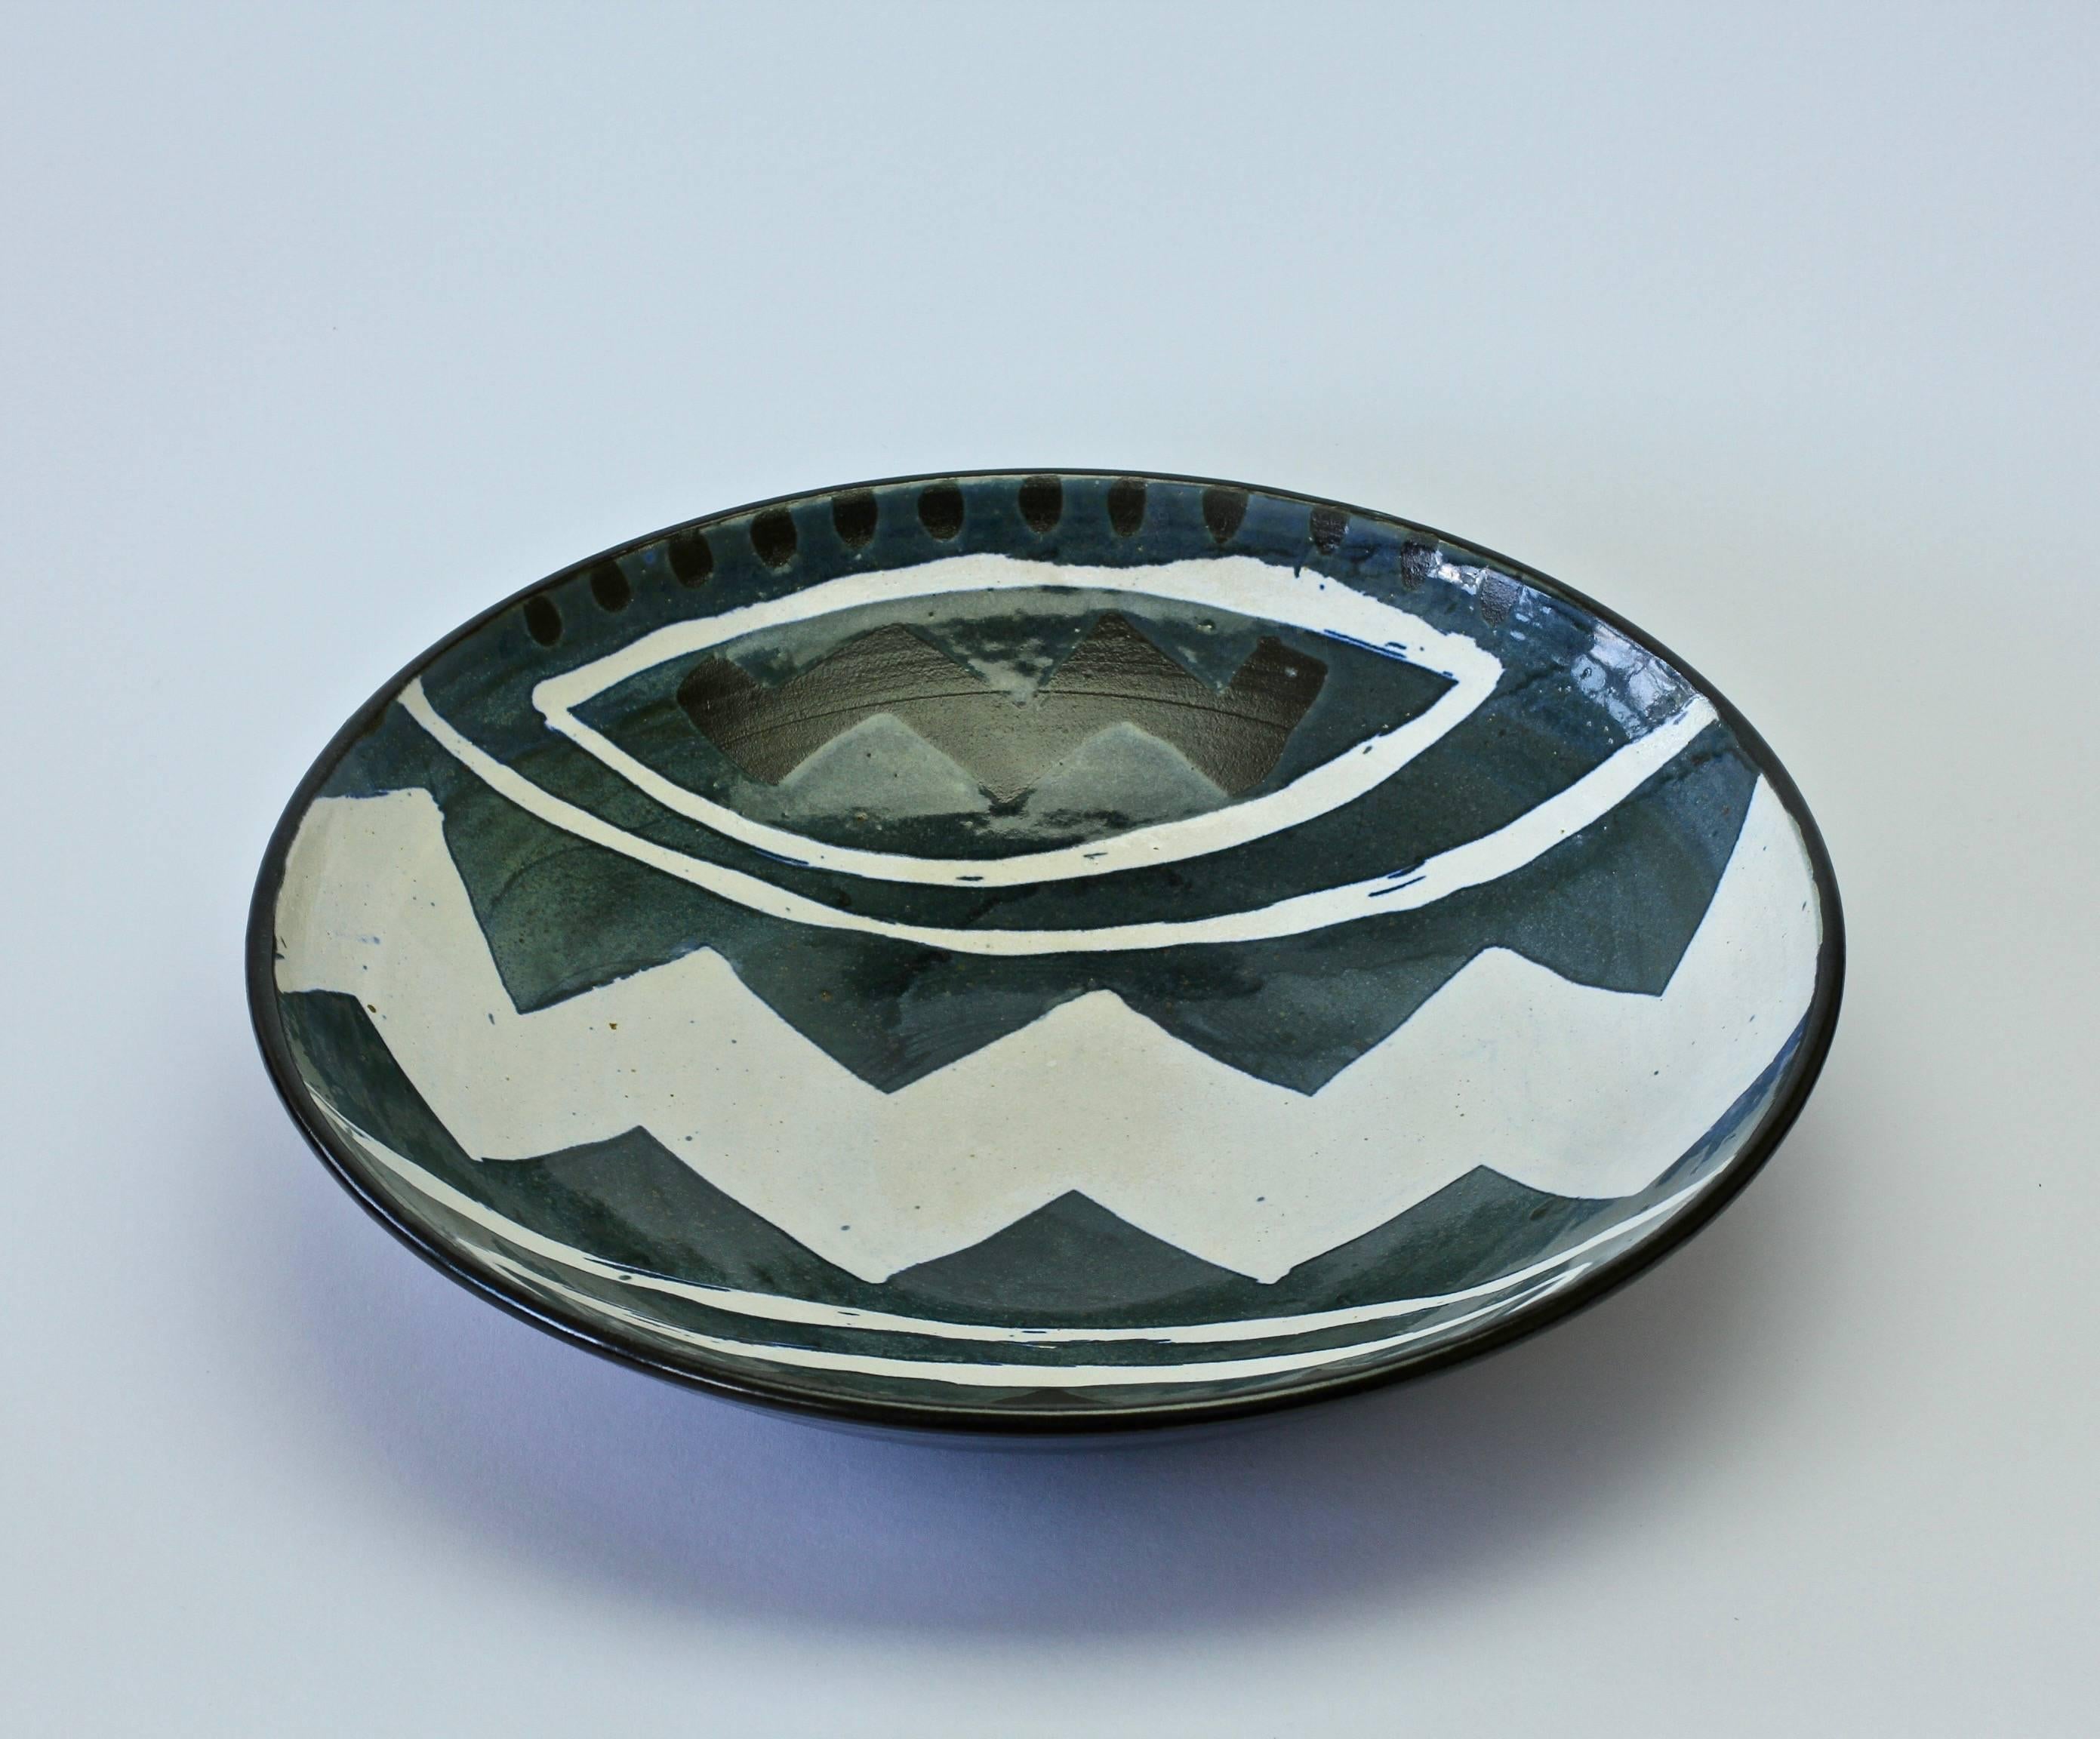 Signierte große Postmodern Art Studio Pottery Schale 1980er Jahre mit geometrischem Muster (Keramik)